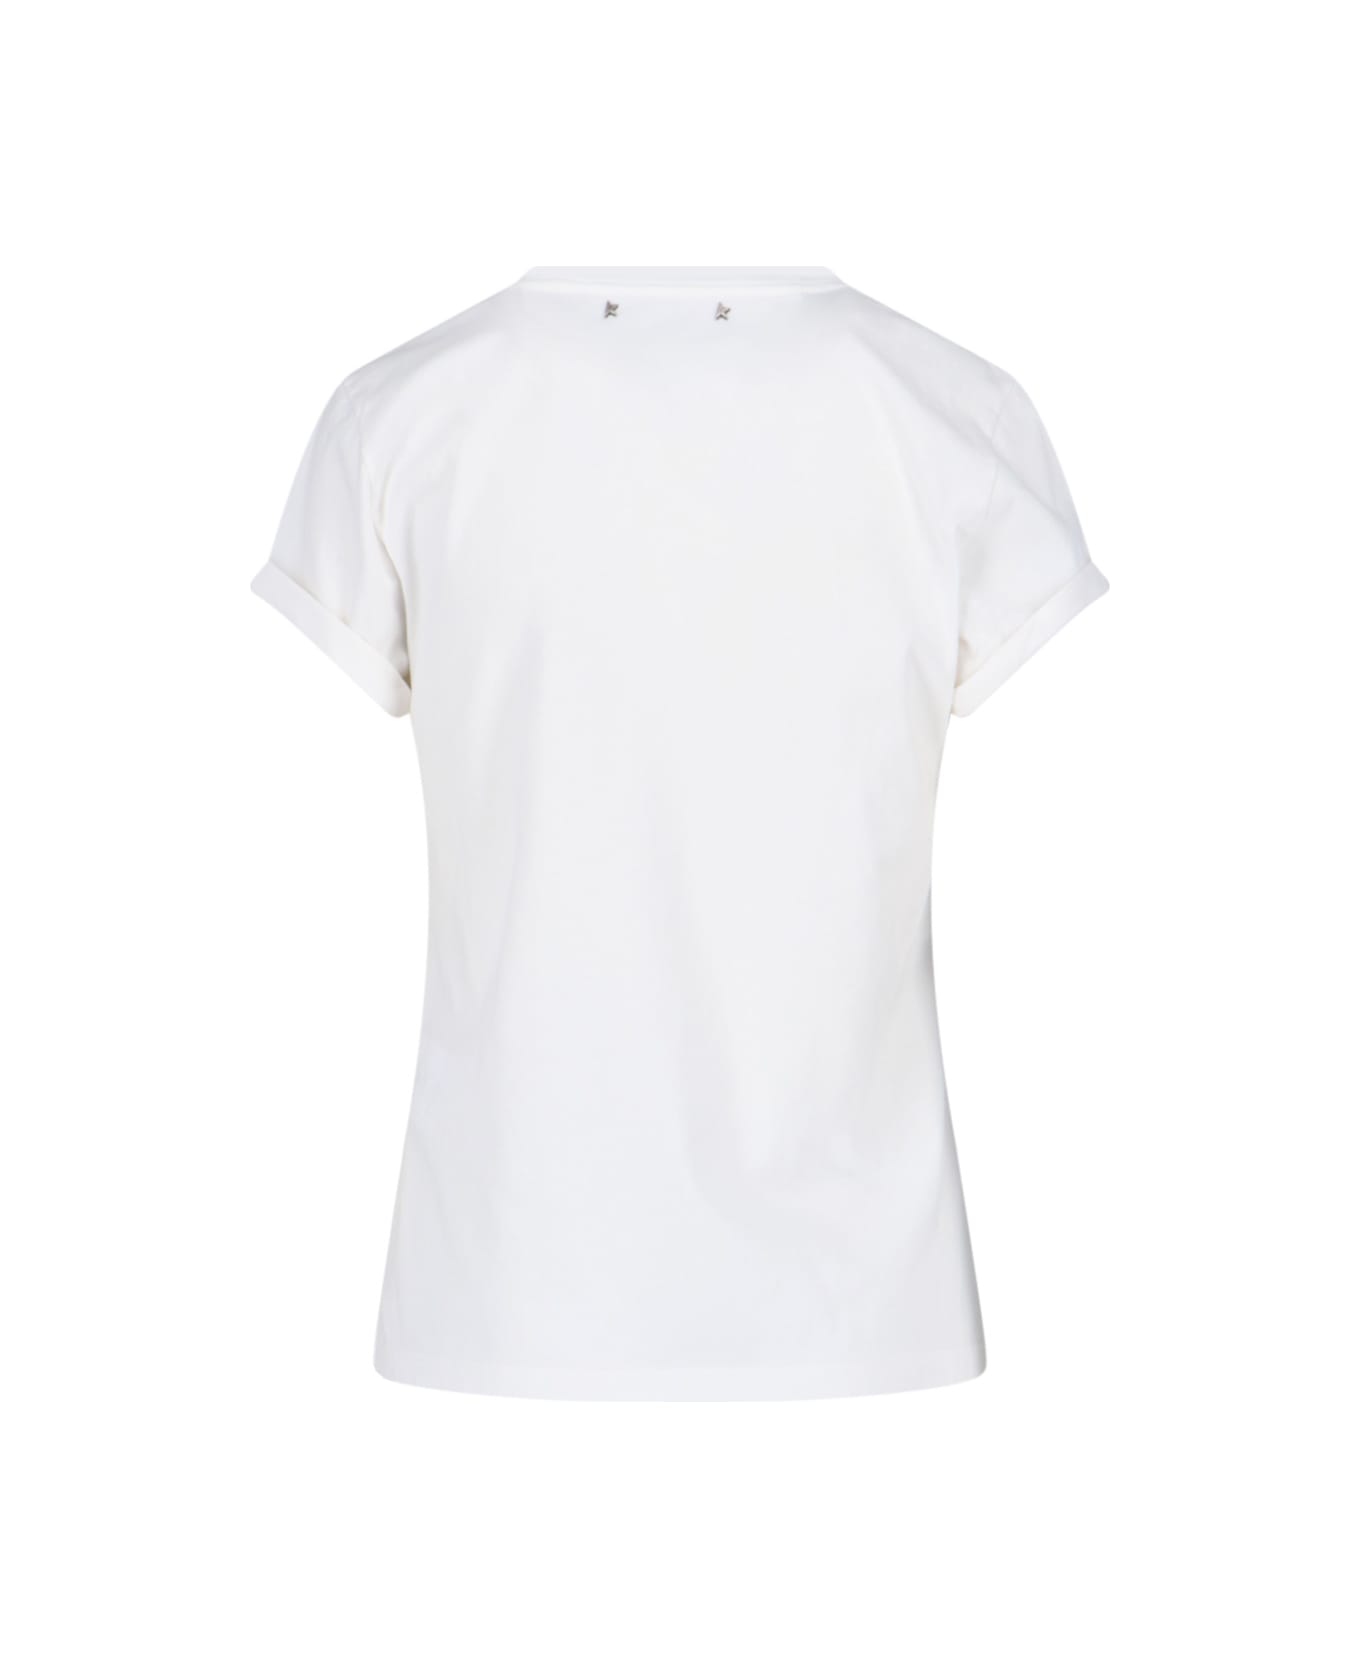 Golden Goose Basic T-shirt - White